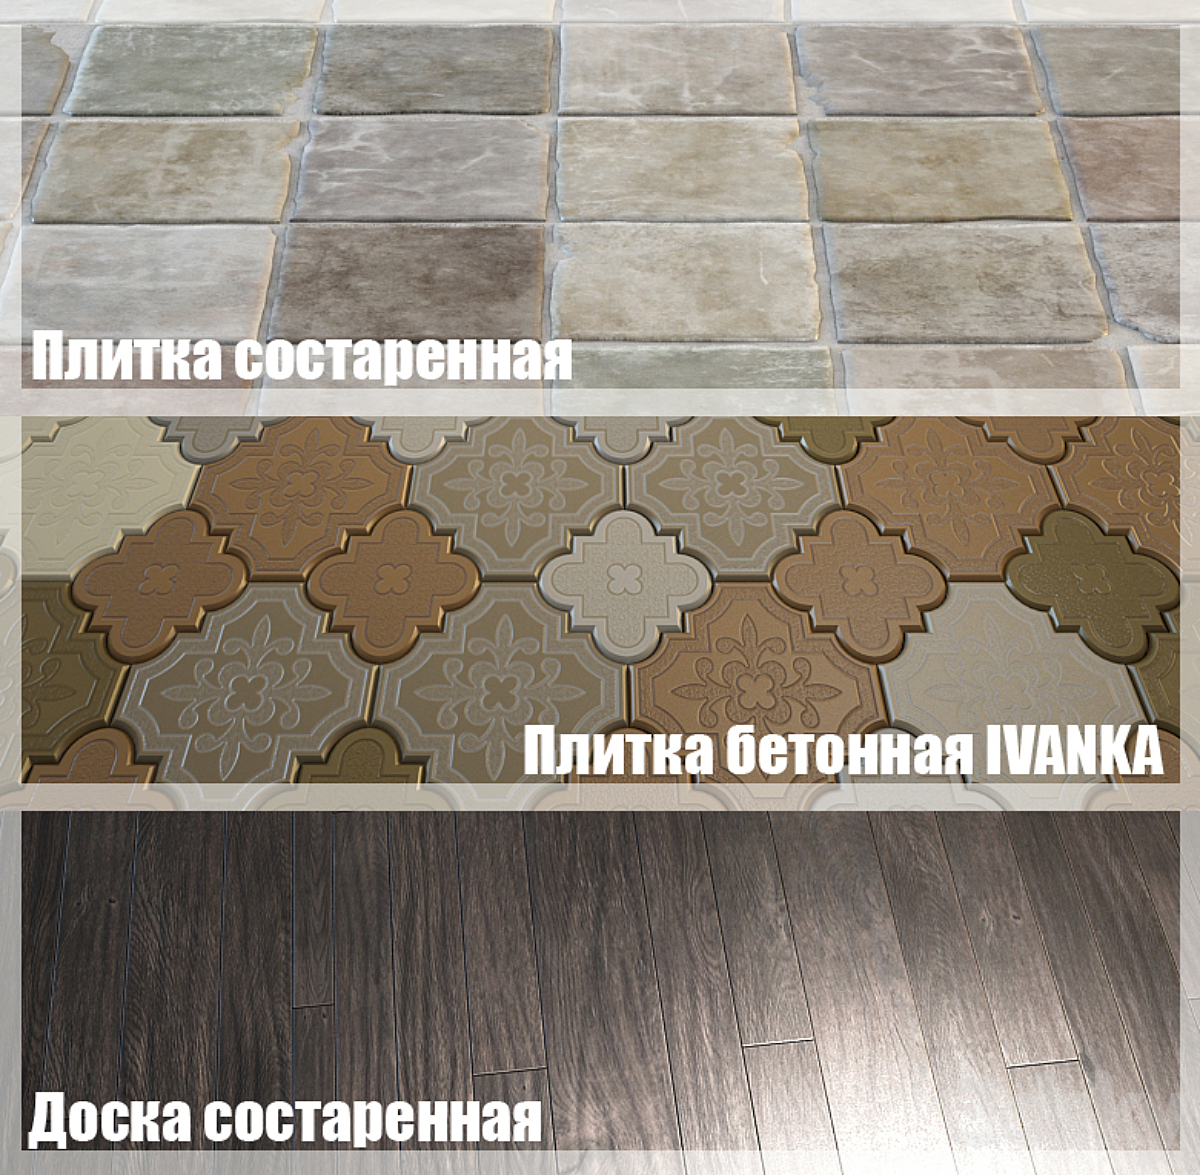 Floor coverings